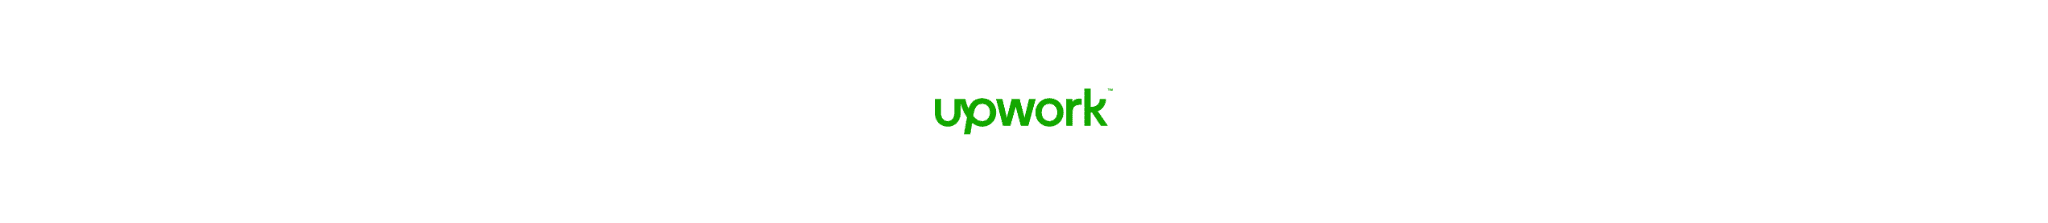 Logo of Upwork platform